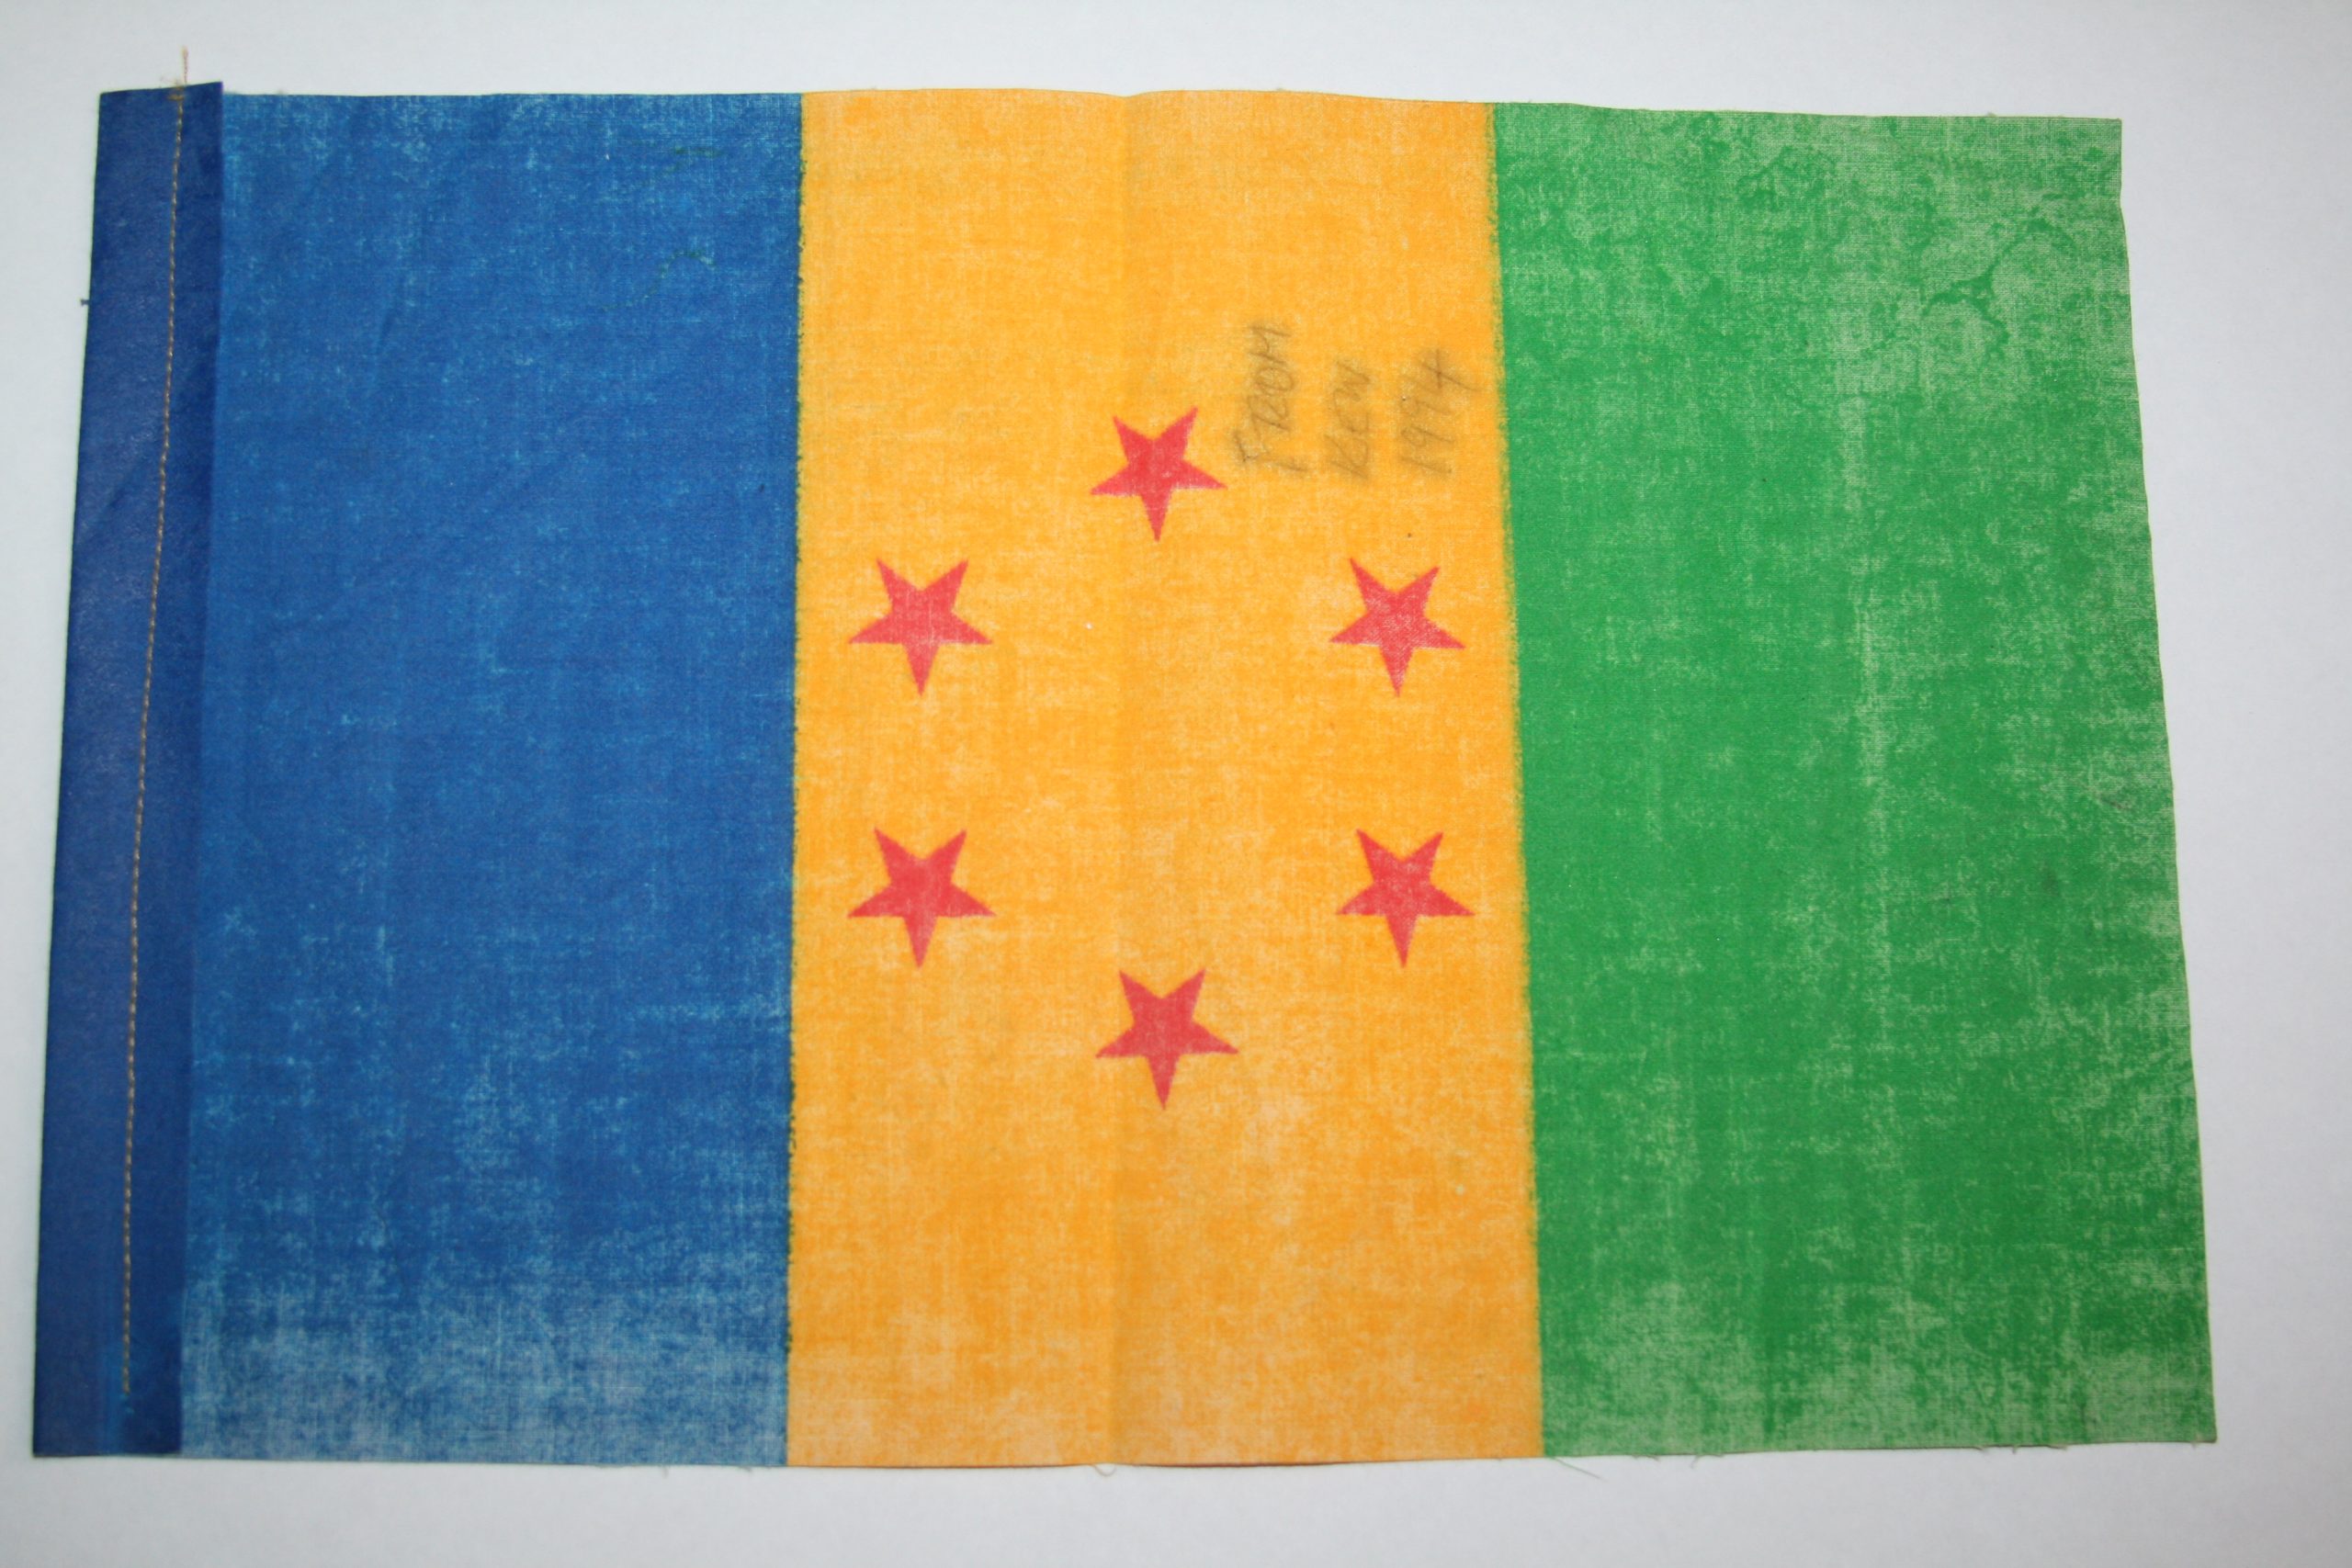 Ogoni flag signed by Ken Saro-Wiwa in 1994. Photographed by Alan Monahan. Maynooth University Ken Saro-Wiwa Archive.